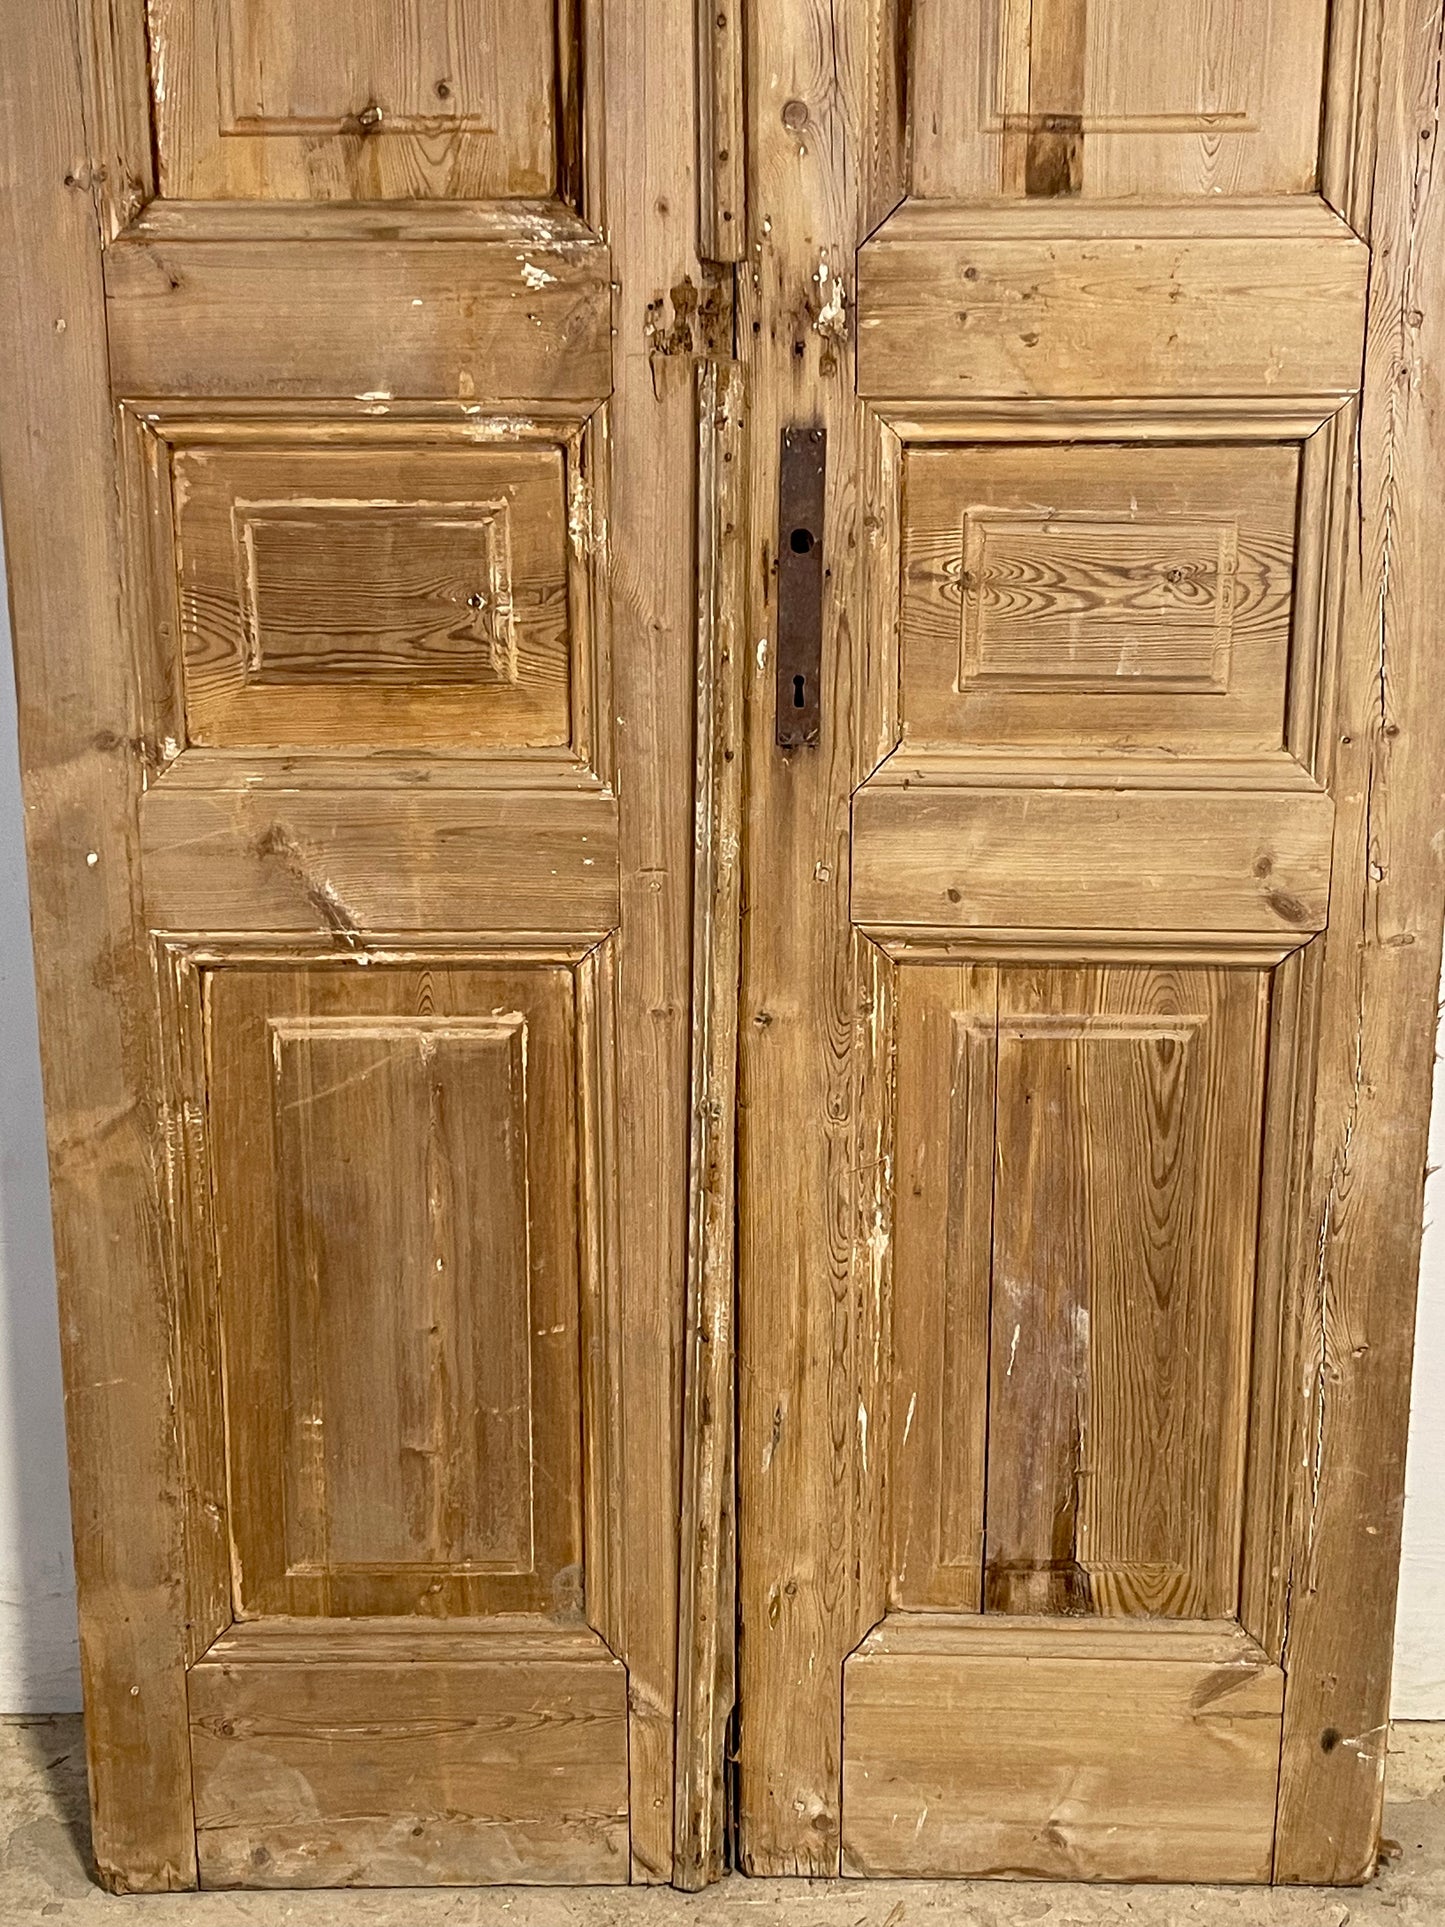 Antique French panel Doors (90.5x37.25) K374